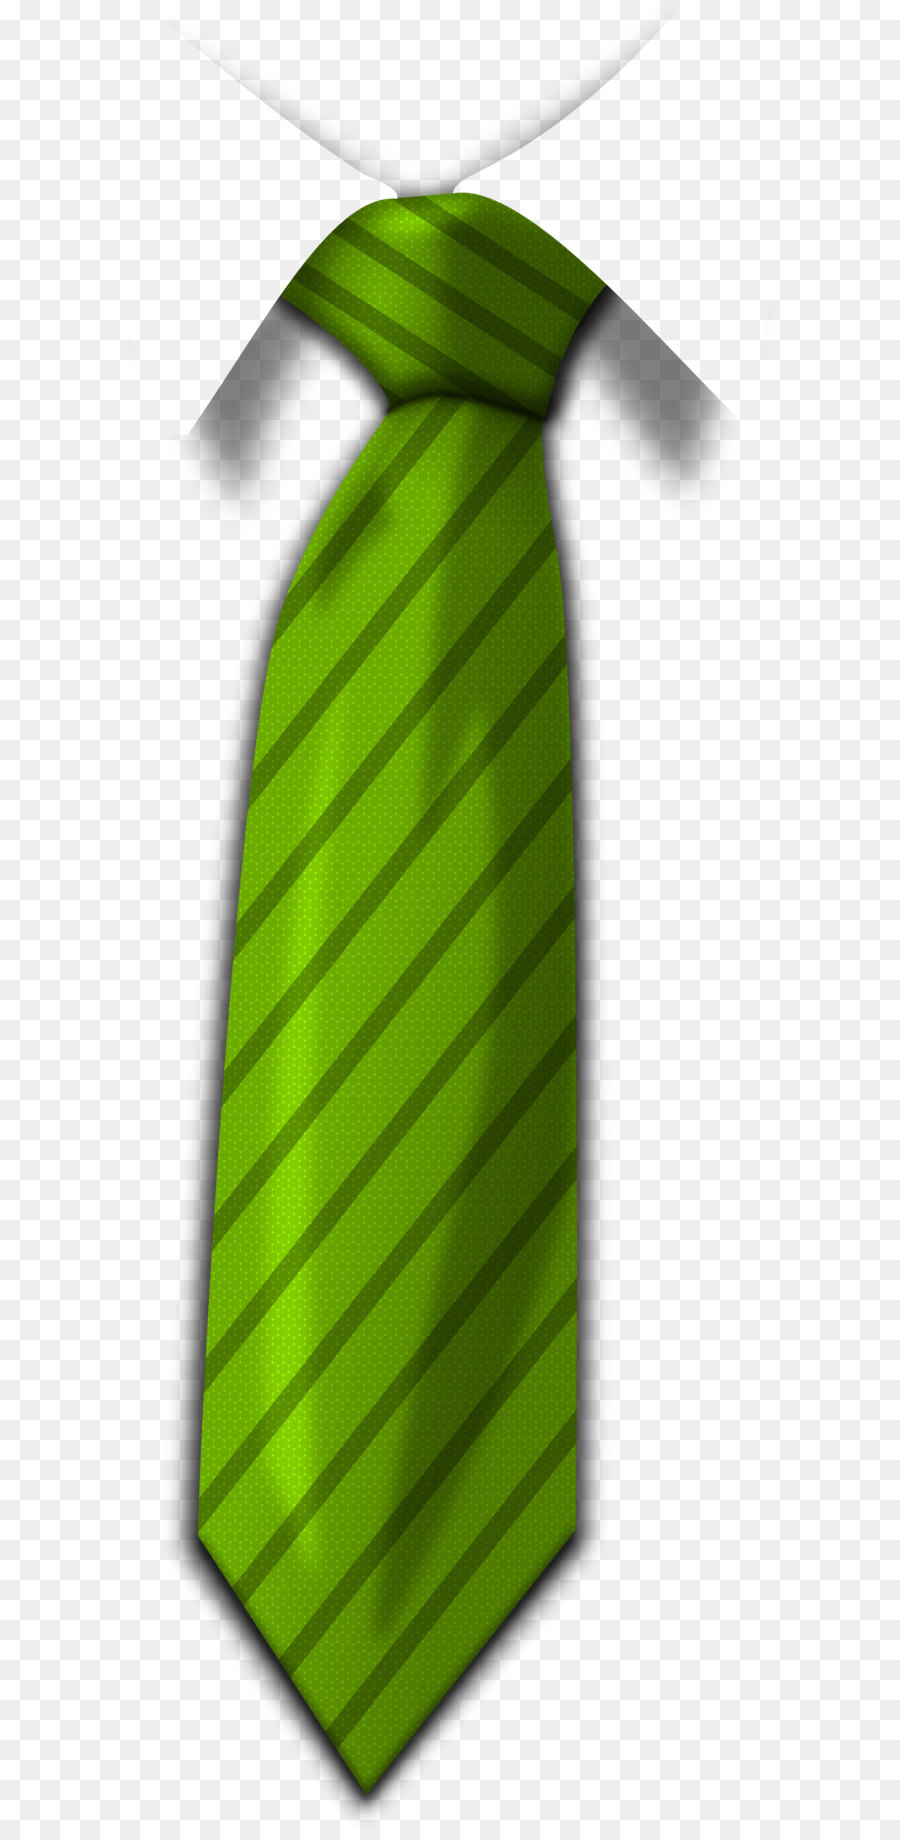 Necktie Clip art - Green Tie Png Image png download - 1243*3500 - Free Transparent Necktie png Download.